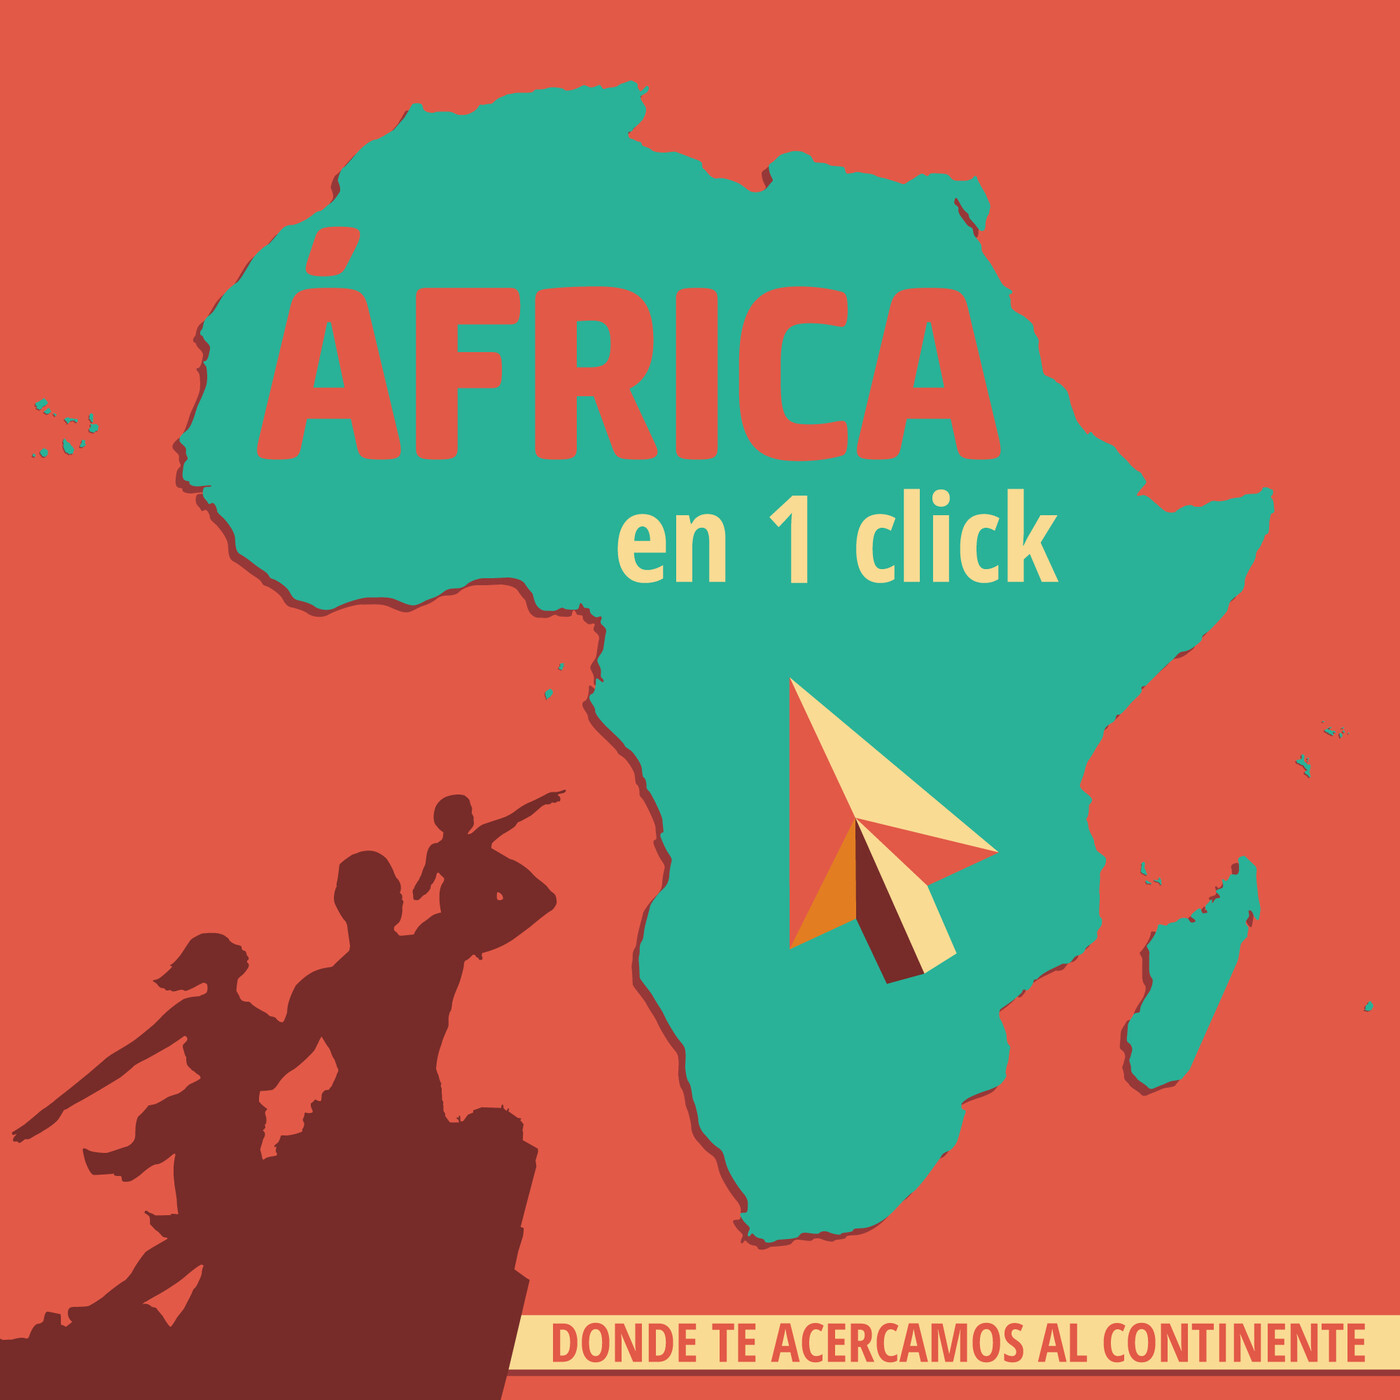 Africa en 1 click - Podcast en iVoox